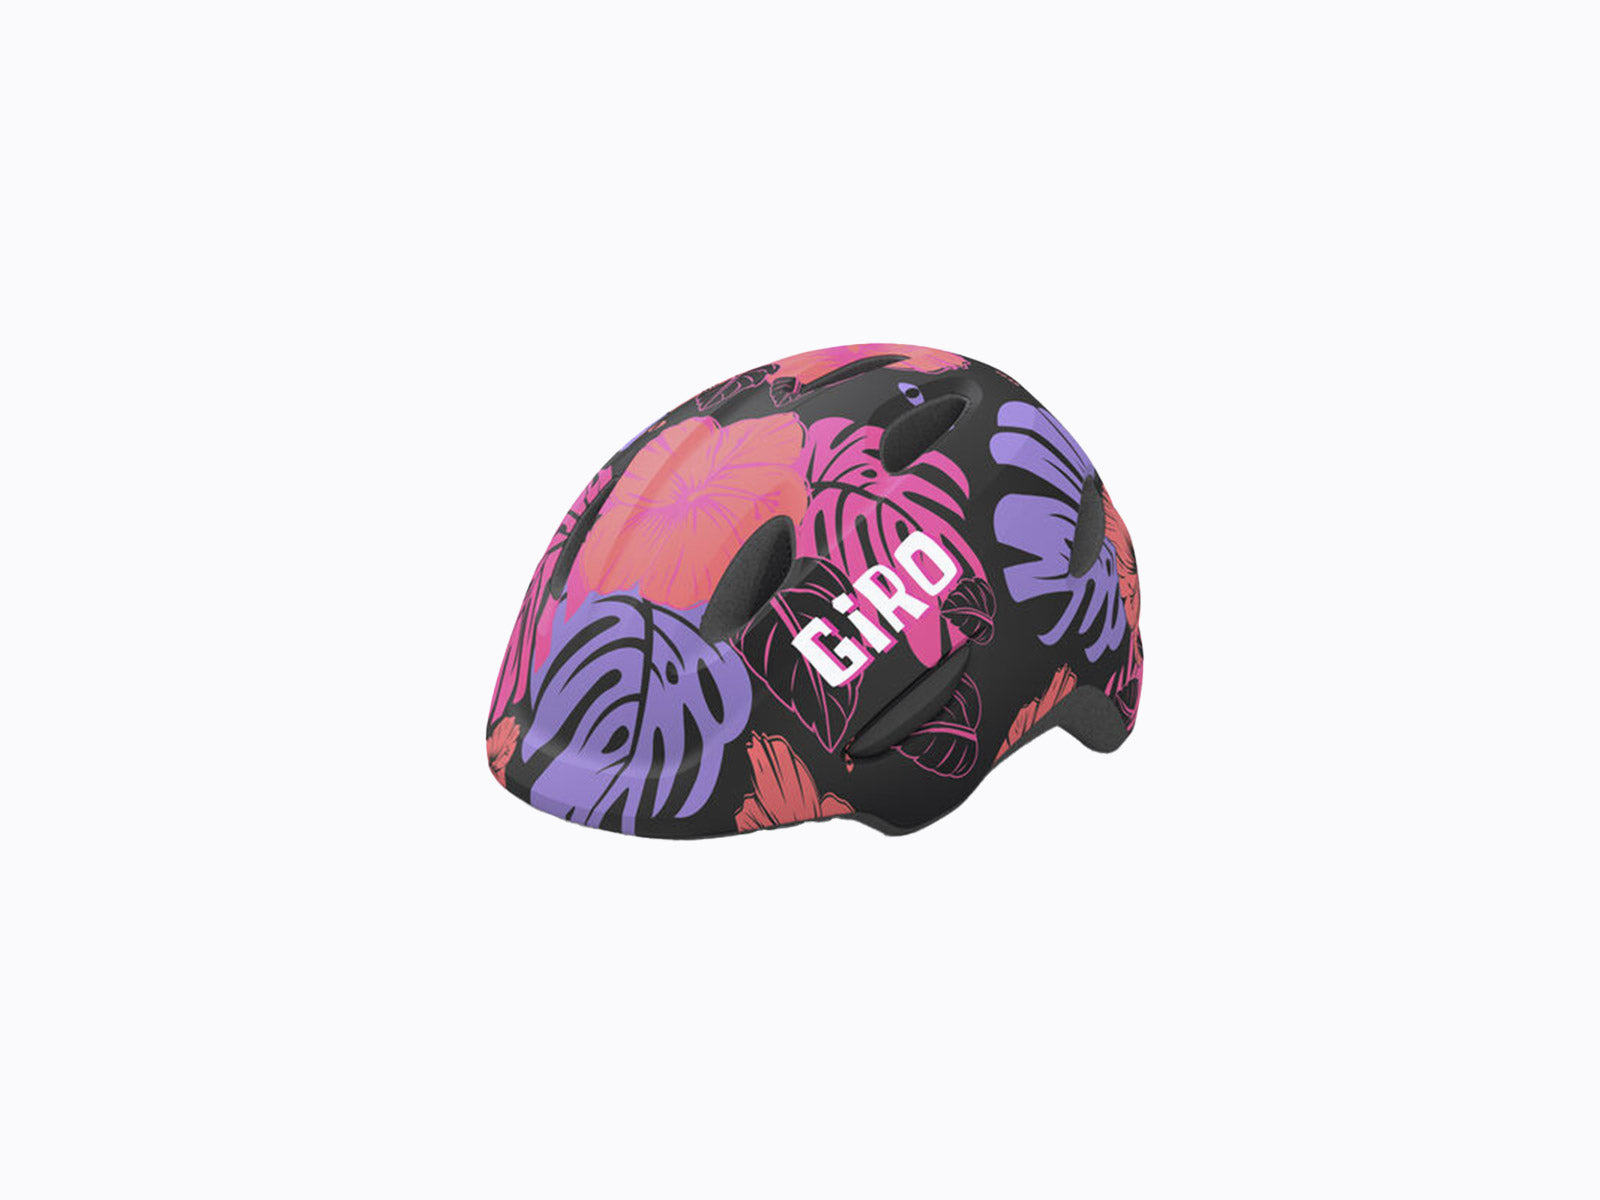 Giro Scamp Kids Helmet